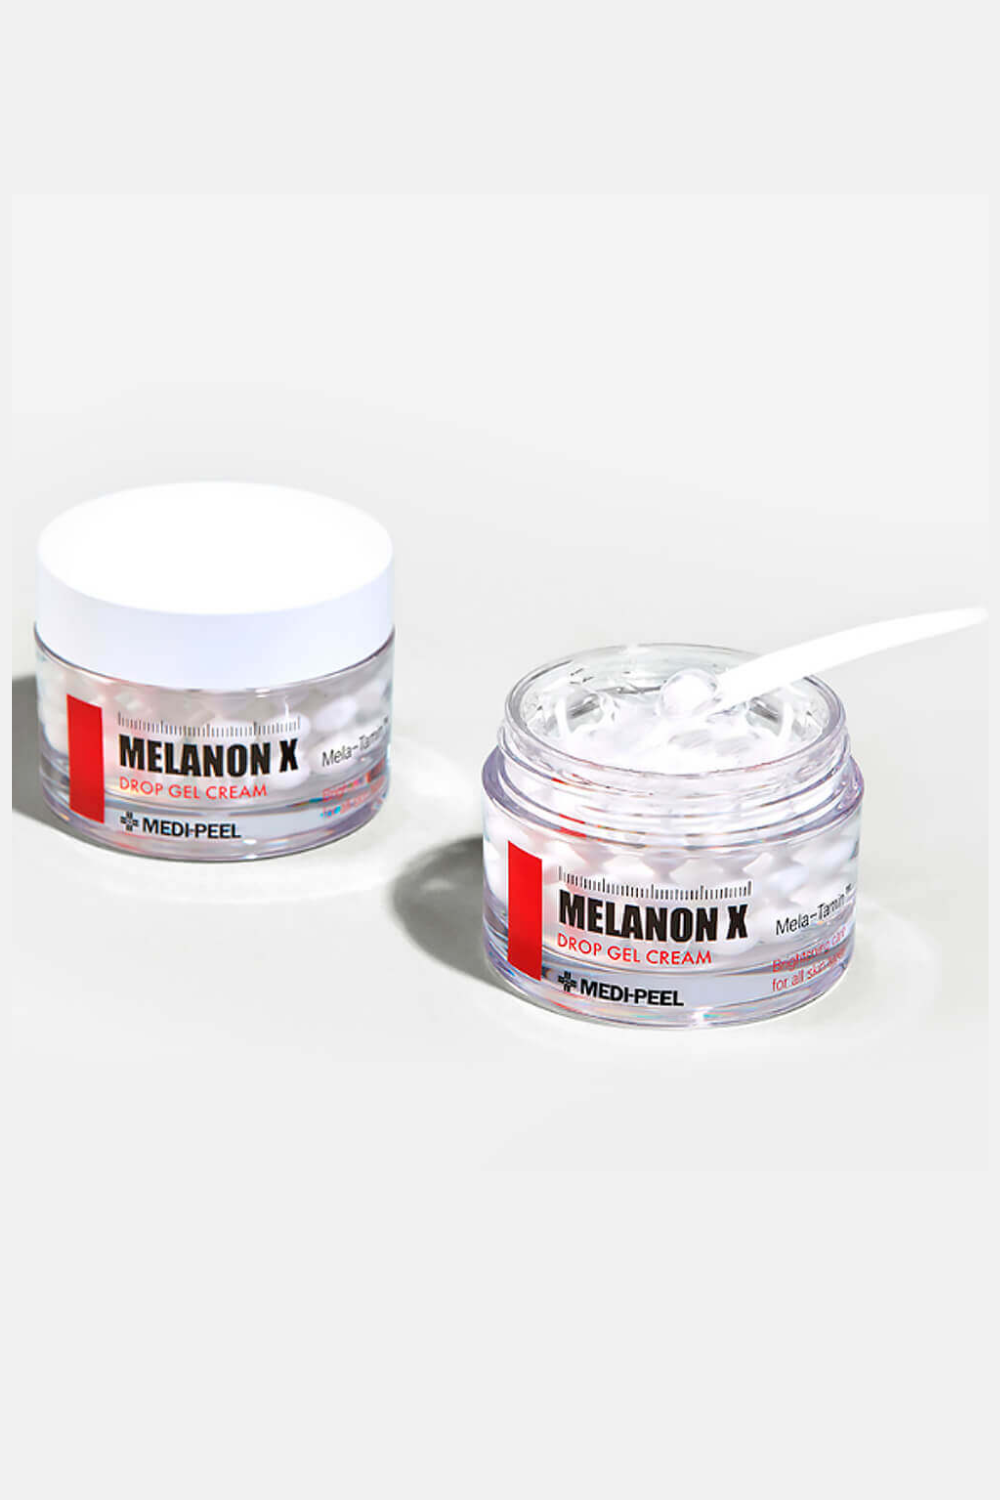 Melanon X Drop Gel Cream - 50g MEDI-PEEL